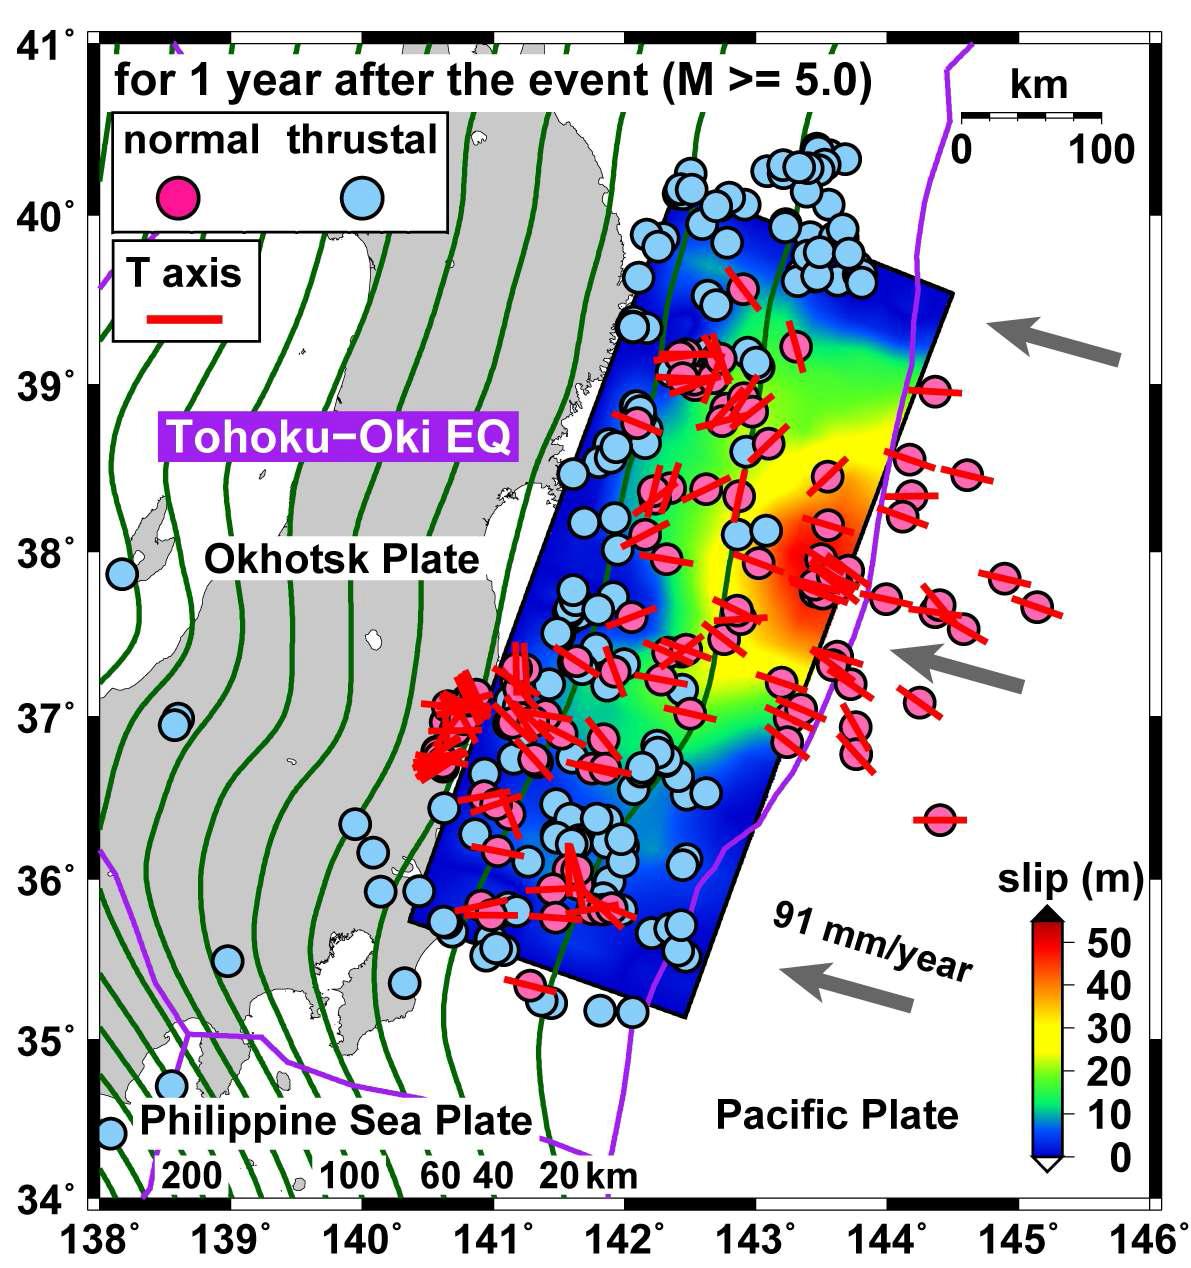 2011년 3월 11일에 발생한 규모 9.0의 동일본 대지진 이후 발생한 지진 활동도. 슬립 모델 (Y agi and Fukahata, 2011)과 판의 이동 속도 (Seno and Sakurai, 1996; Ide, 2013)는 지도위에 표현되었다. 판 경계와 깊이 별 등고선은 슬랩의 위치에 따라 굵은 선으로 표현되었다 (Bird, 2003; Hayes et al., 2012). 1년 동안 발생한 규 모 5 이상의 여진이 표현되었다. 장력 축 방향 (red bars)은 정단층 지진의 위치에 표시되었다.